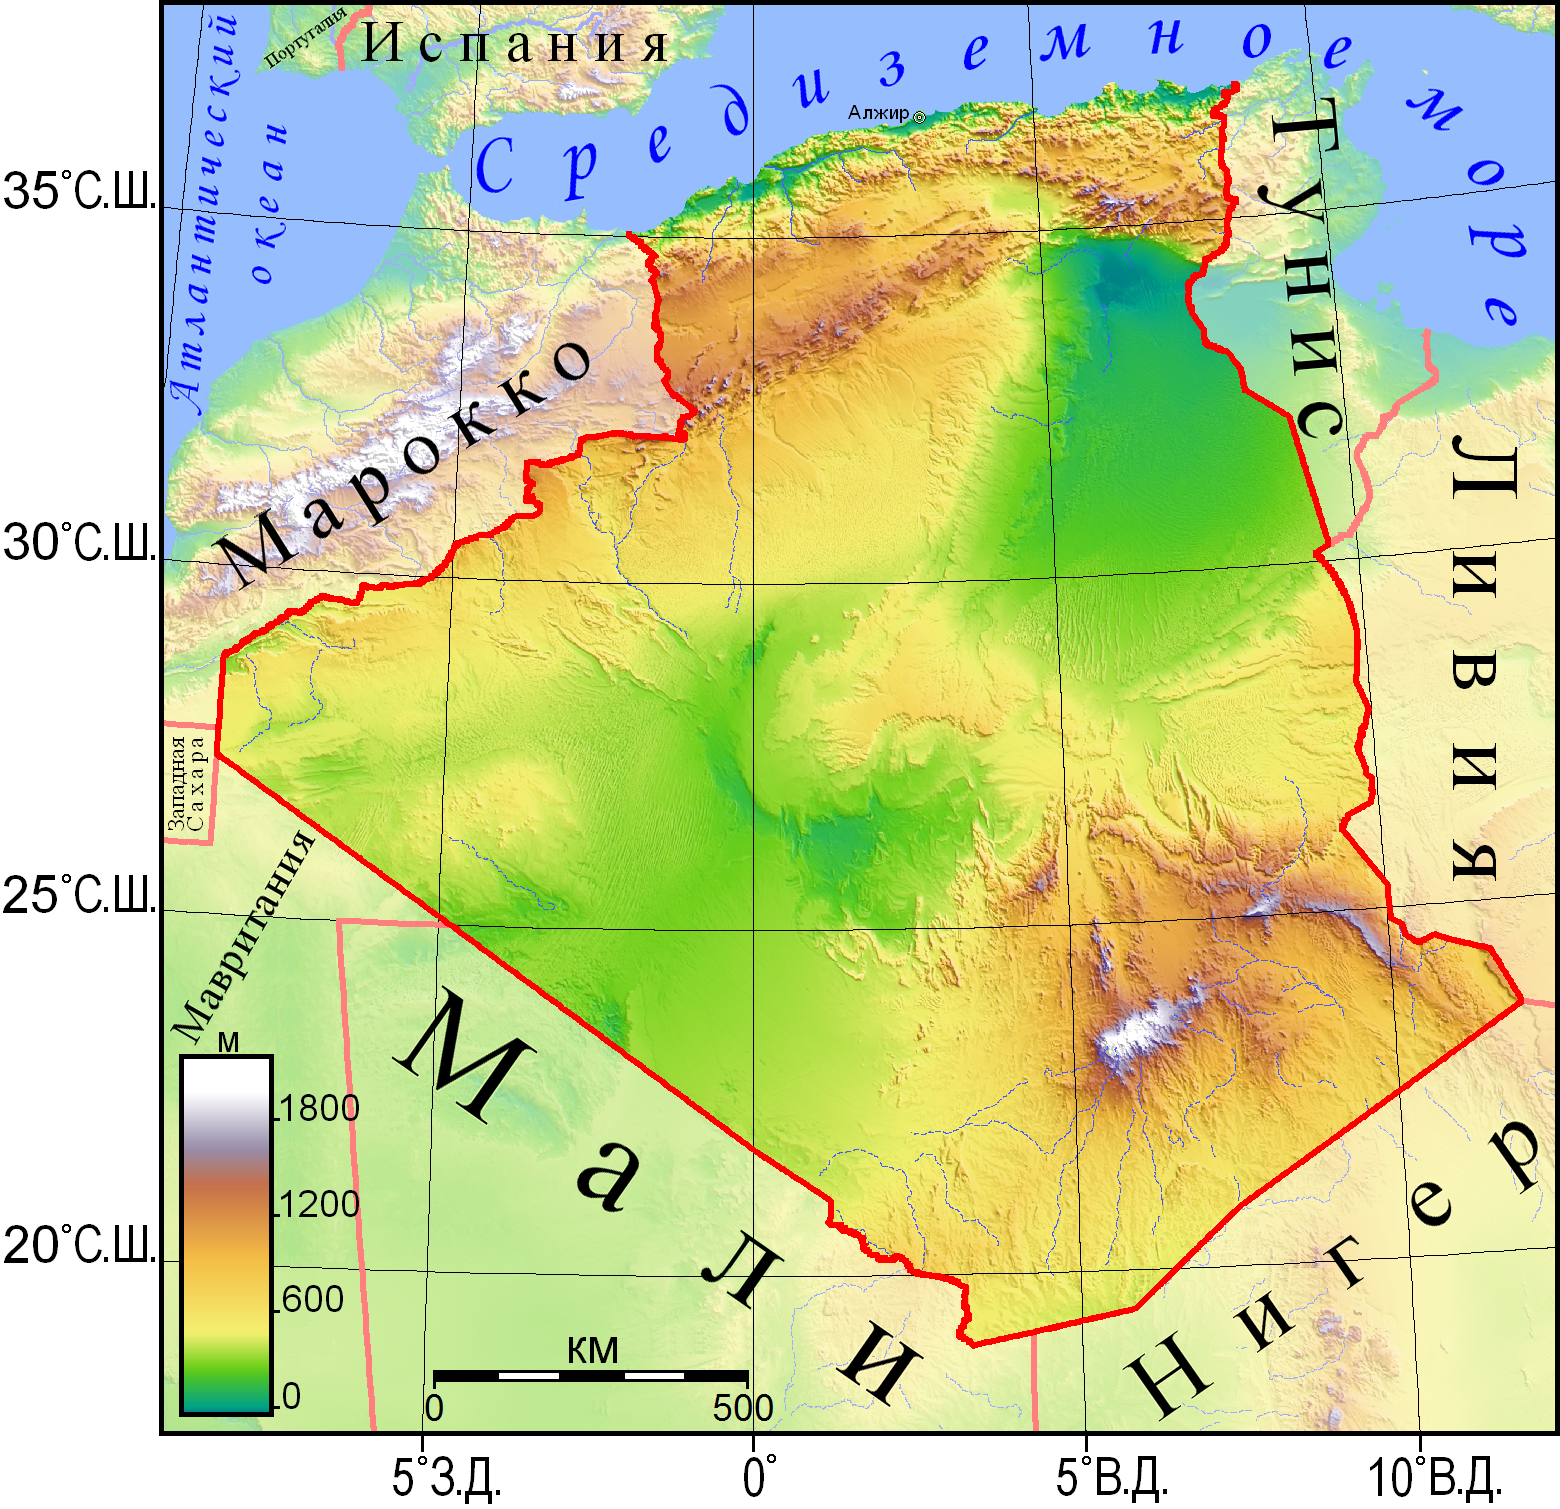 Алжир географическое положение